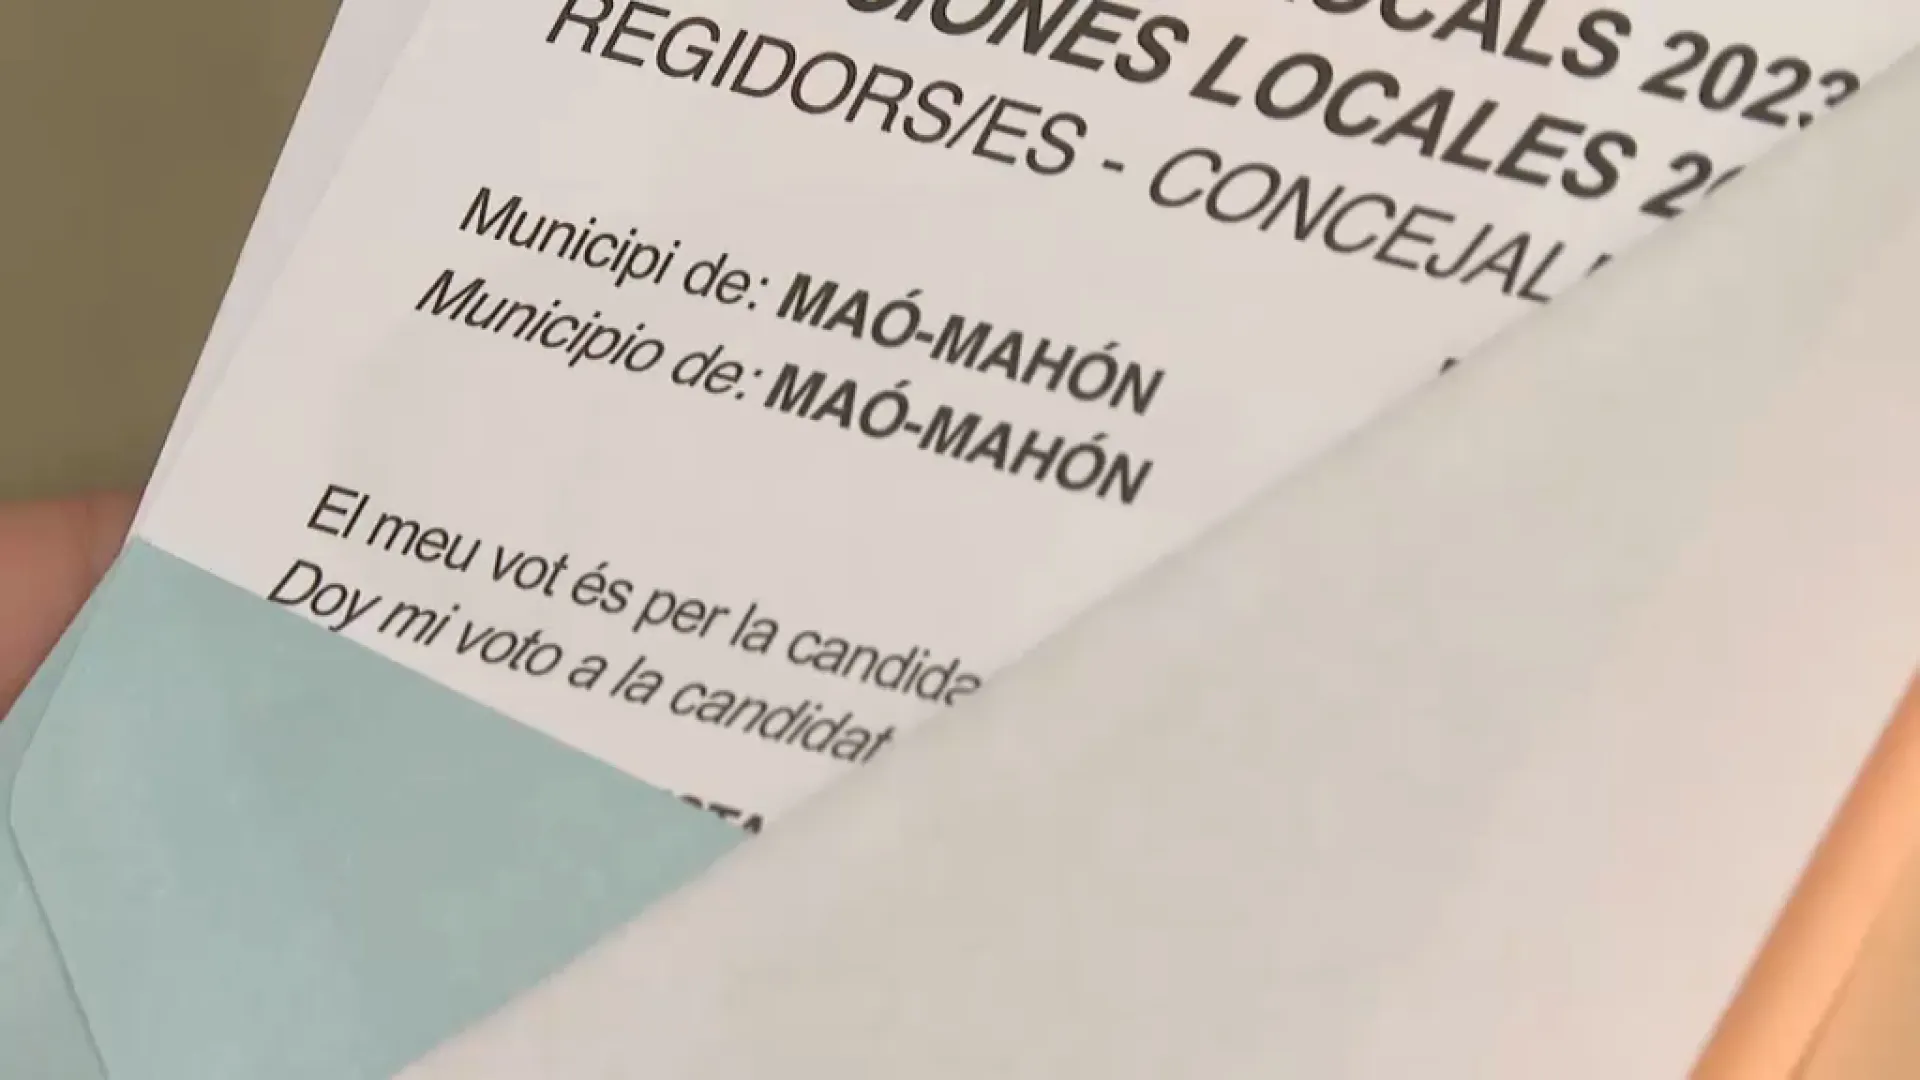 Les paperetes electorals de Maó, impreses en la forma bilingüe ‘Maó-Mahón’